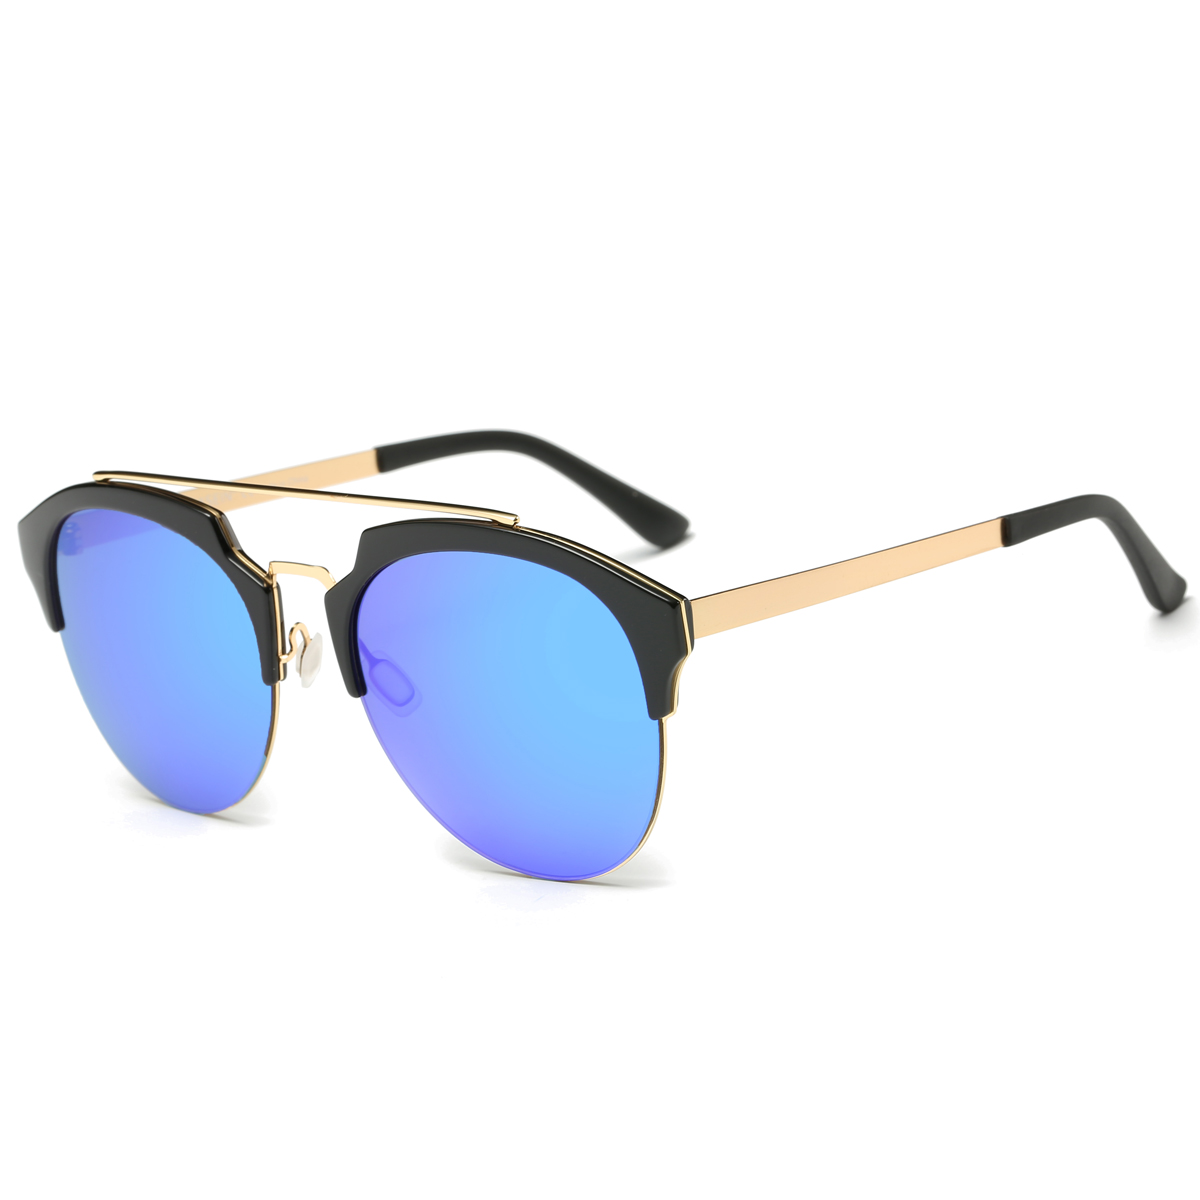 Dasein Semi Rimless Polarized Sunglasses Women Men Retro Sunglasses - image 4 of 4